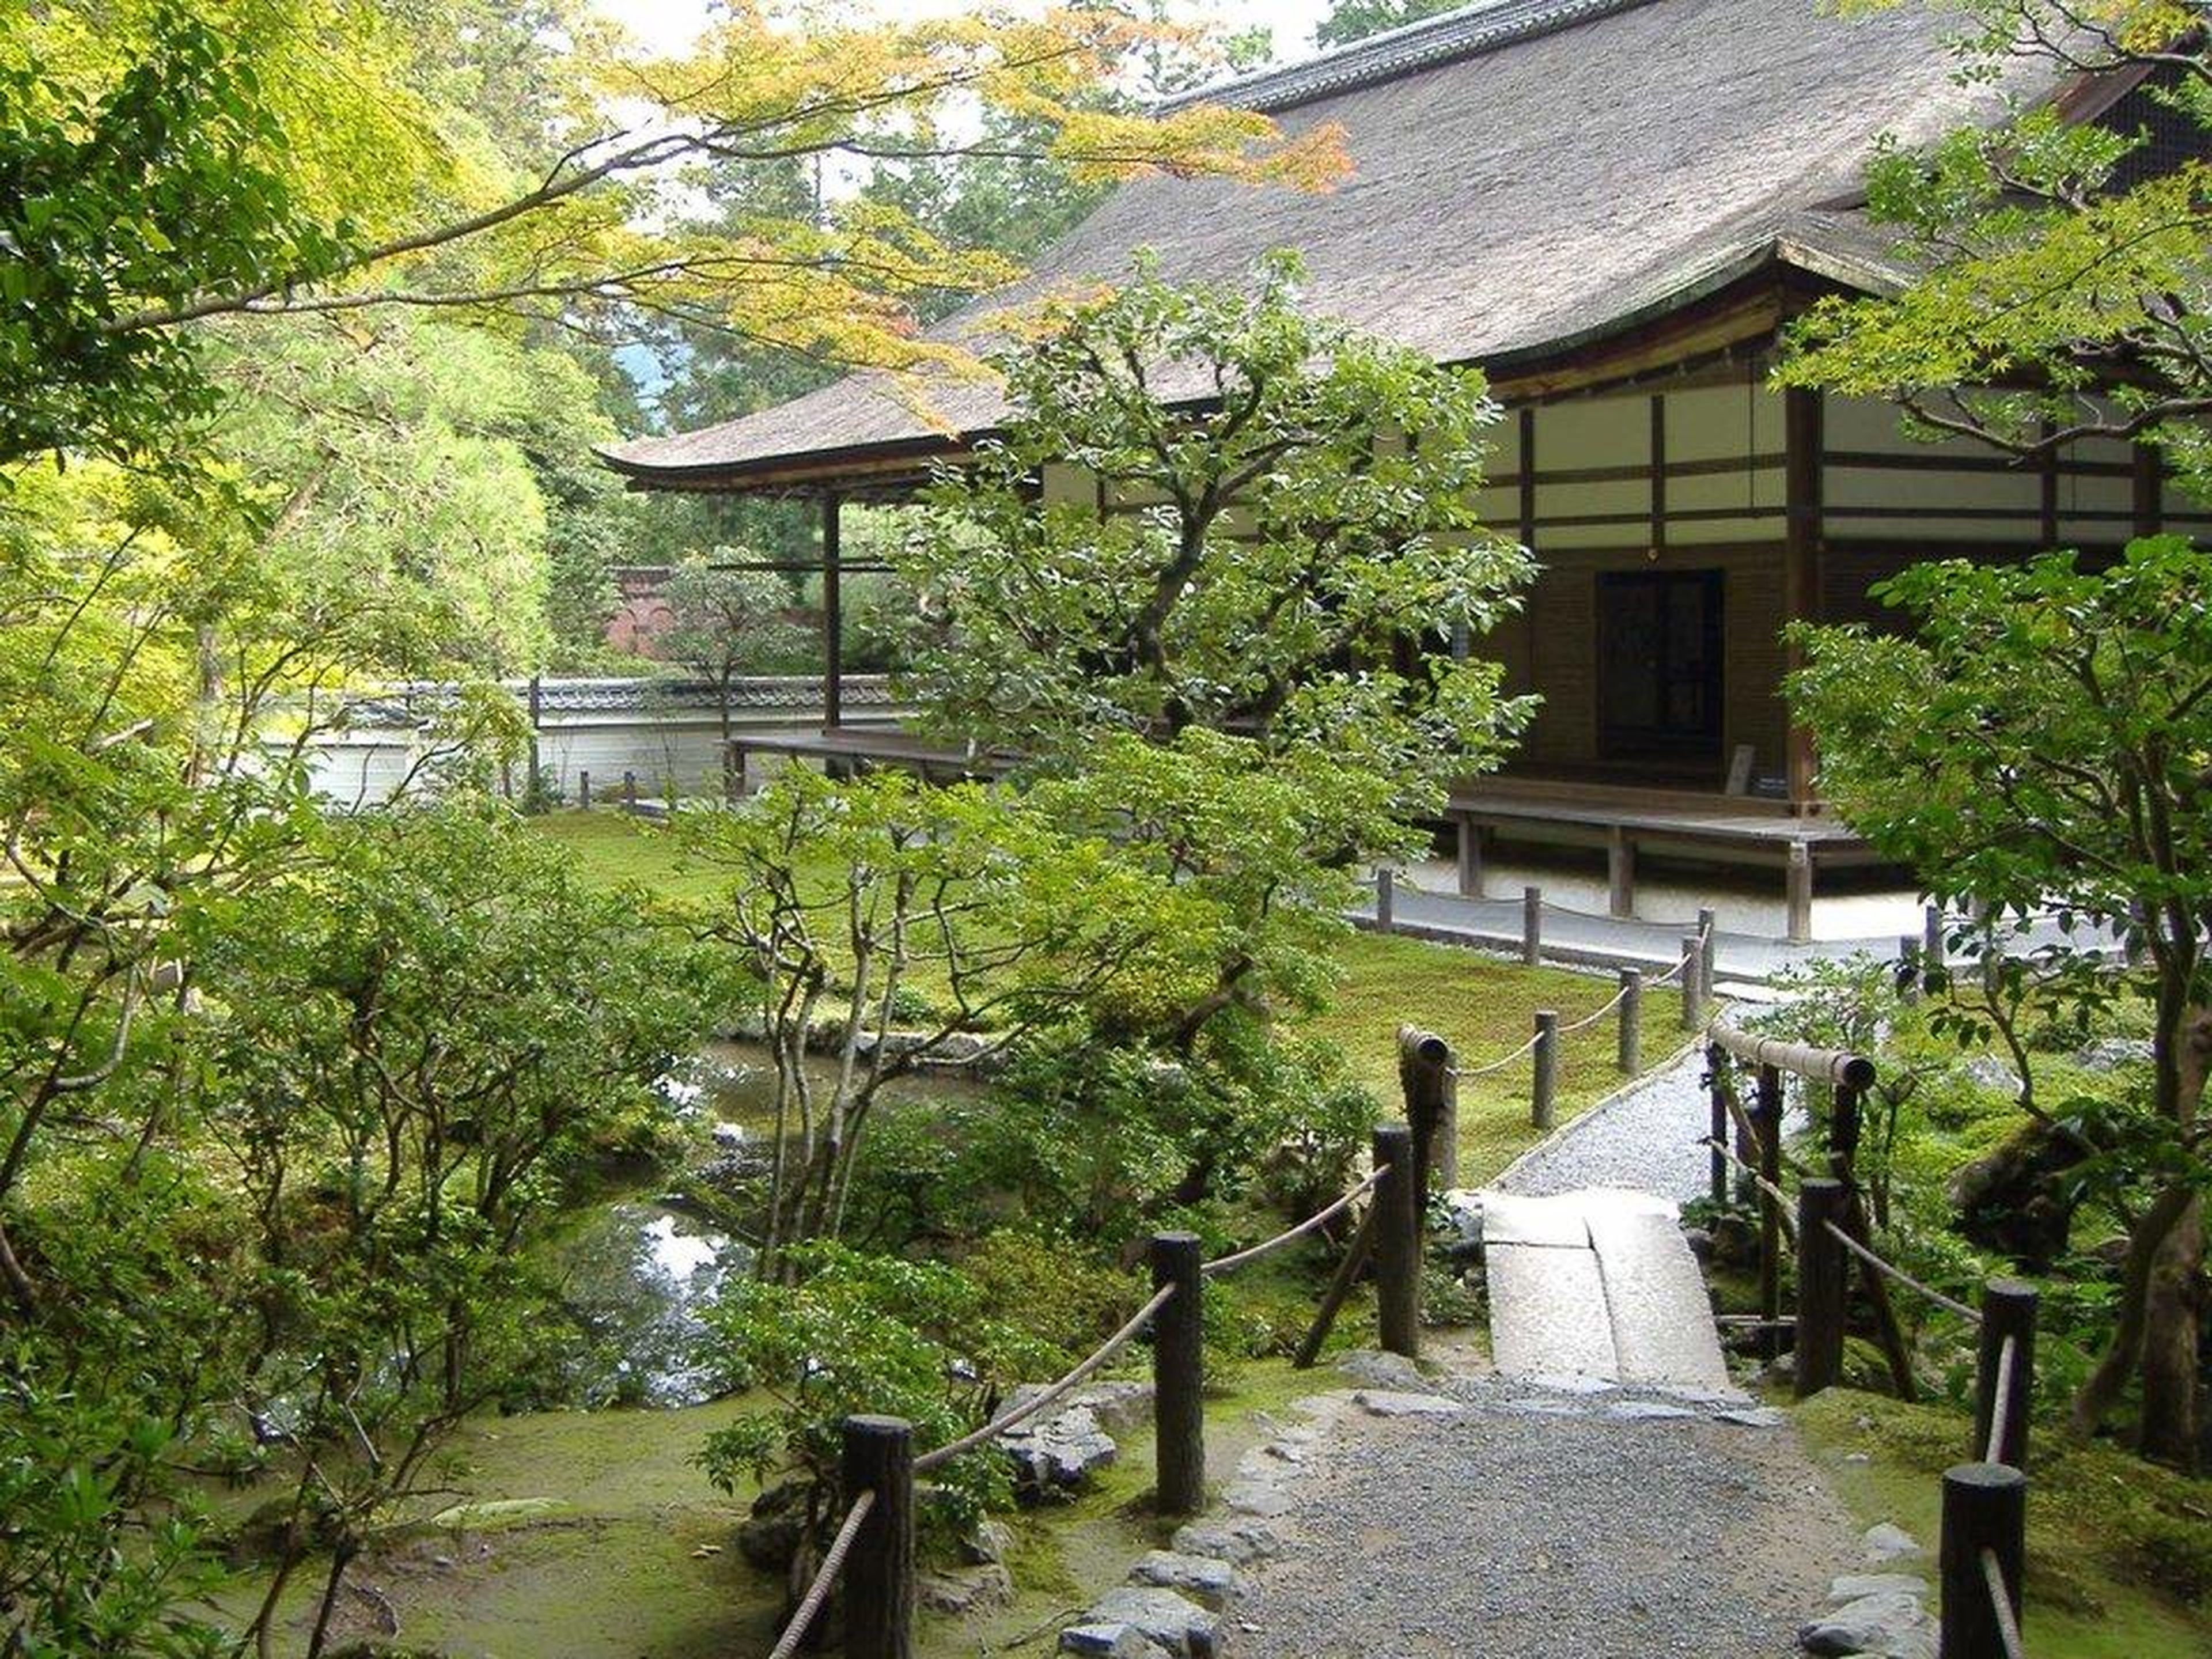 [RE] Este hombre de 74 años también es propietario de una histórica villa con jardín en Kioto, Japón, que según se informa fue registrada por 86 millones de dólares, aunque se desconoce el precio que realmente pagó.